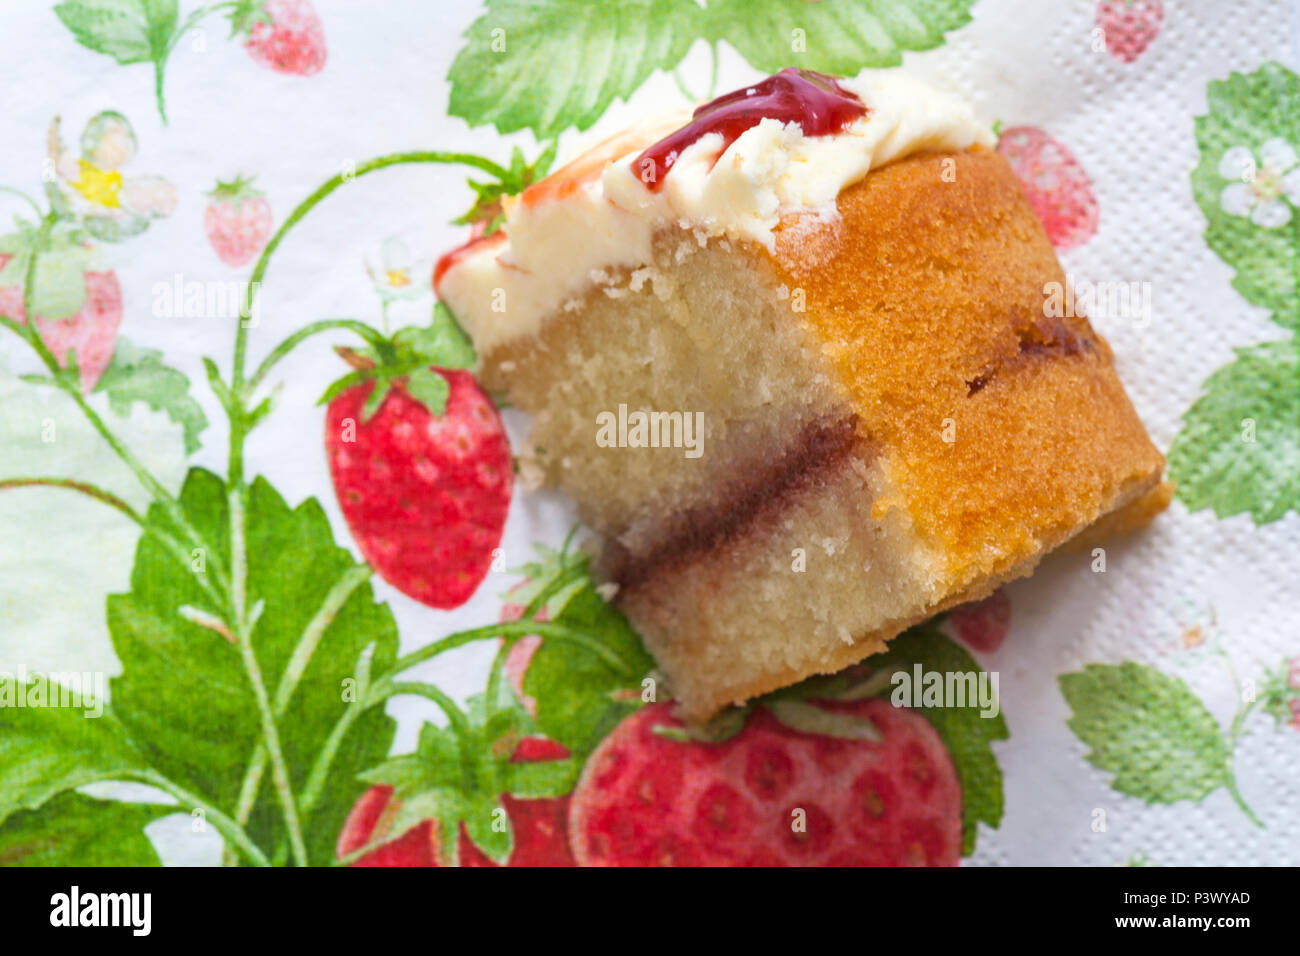 Stück M&S Strawberry & Cornish Clotted Cream Kuchen auf serviette Serviette Stockfoto